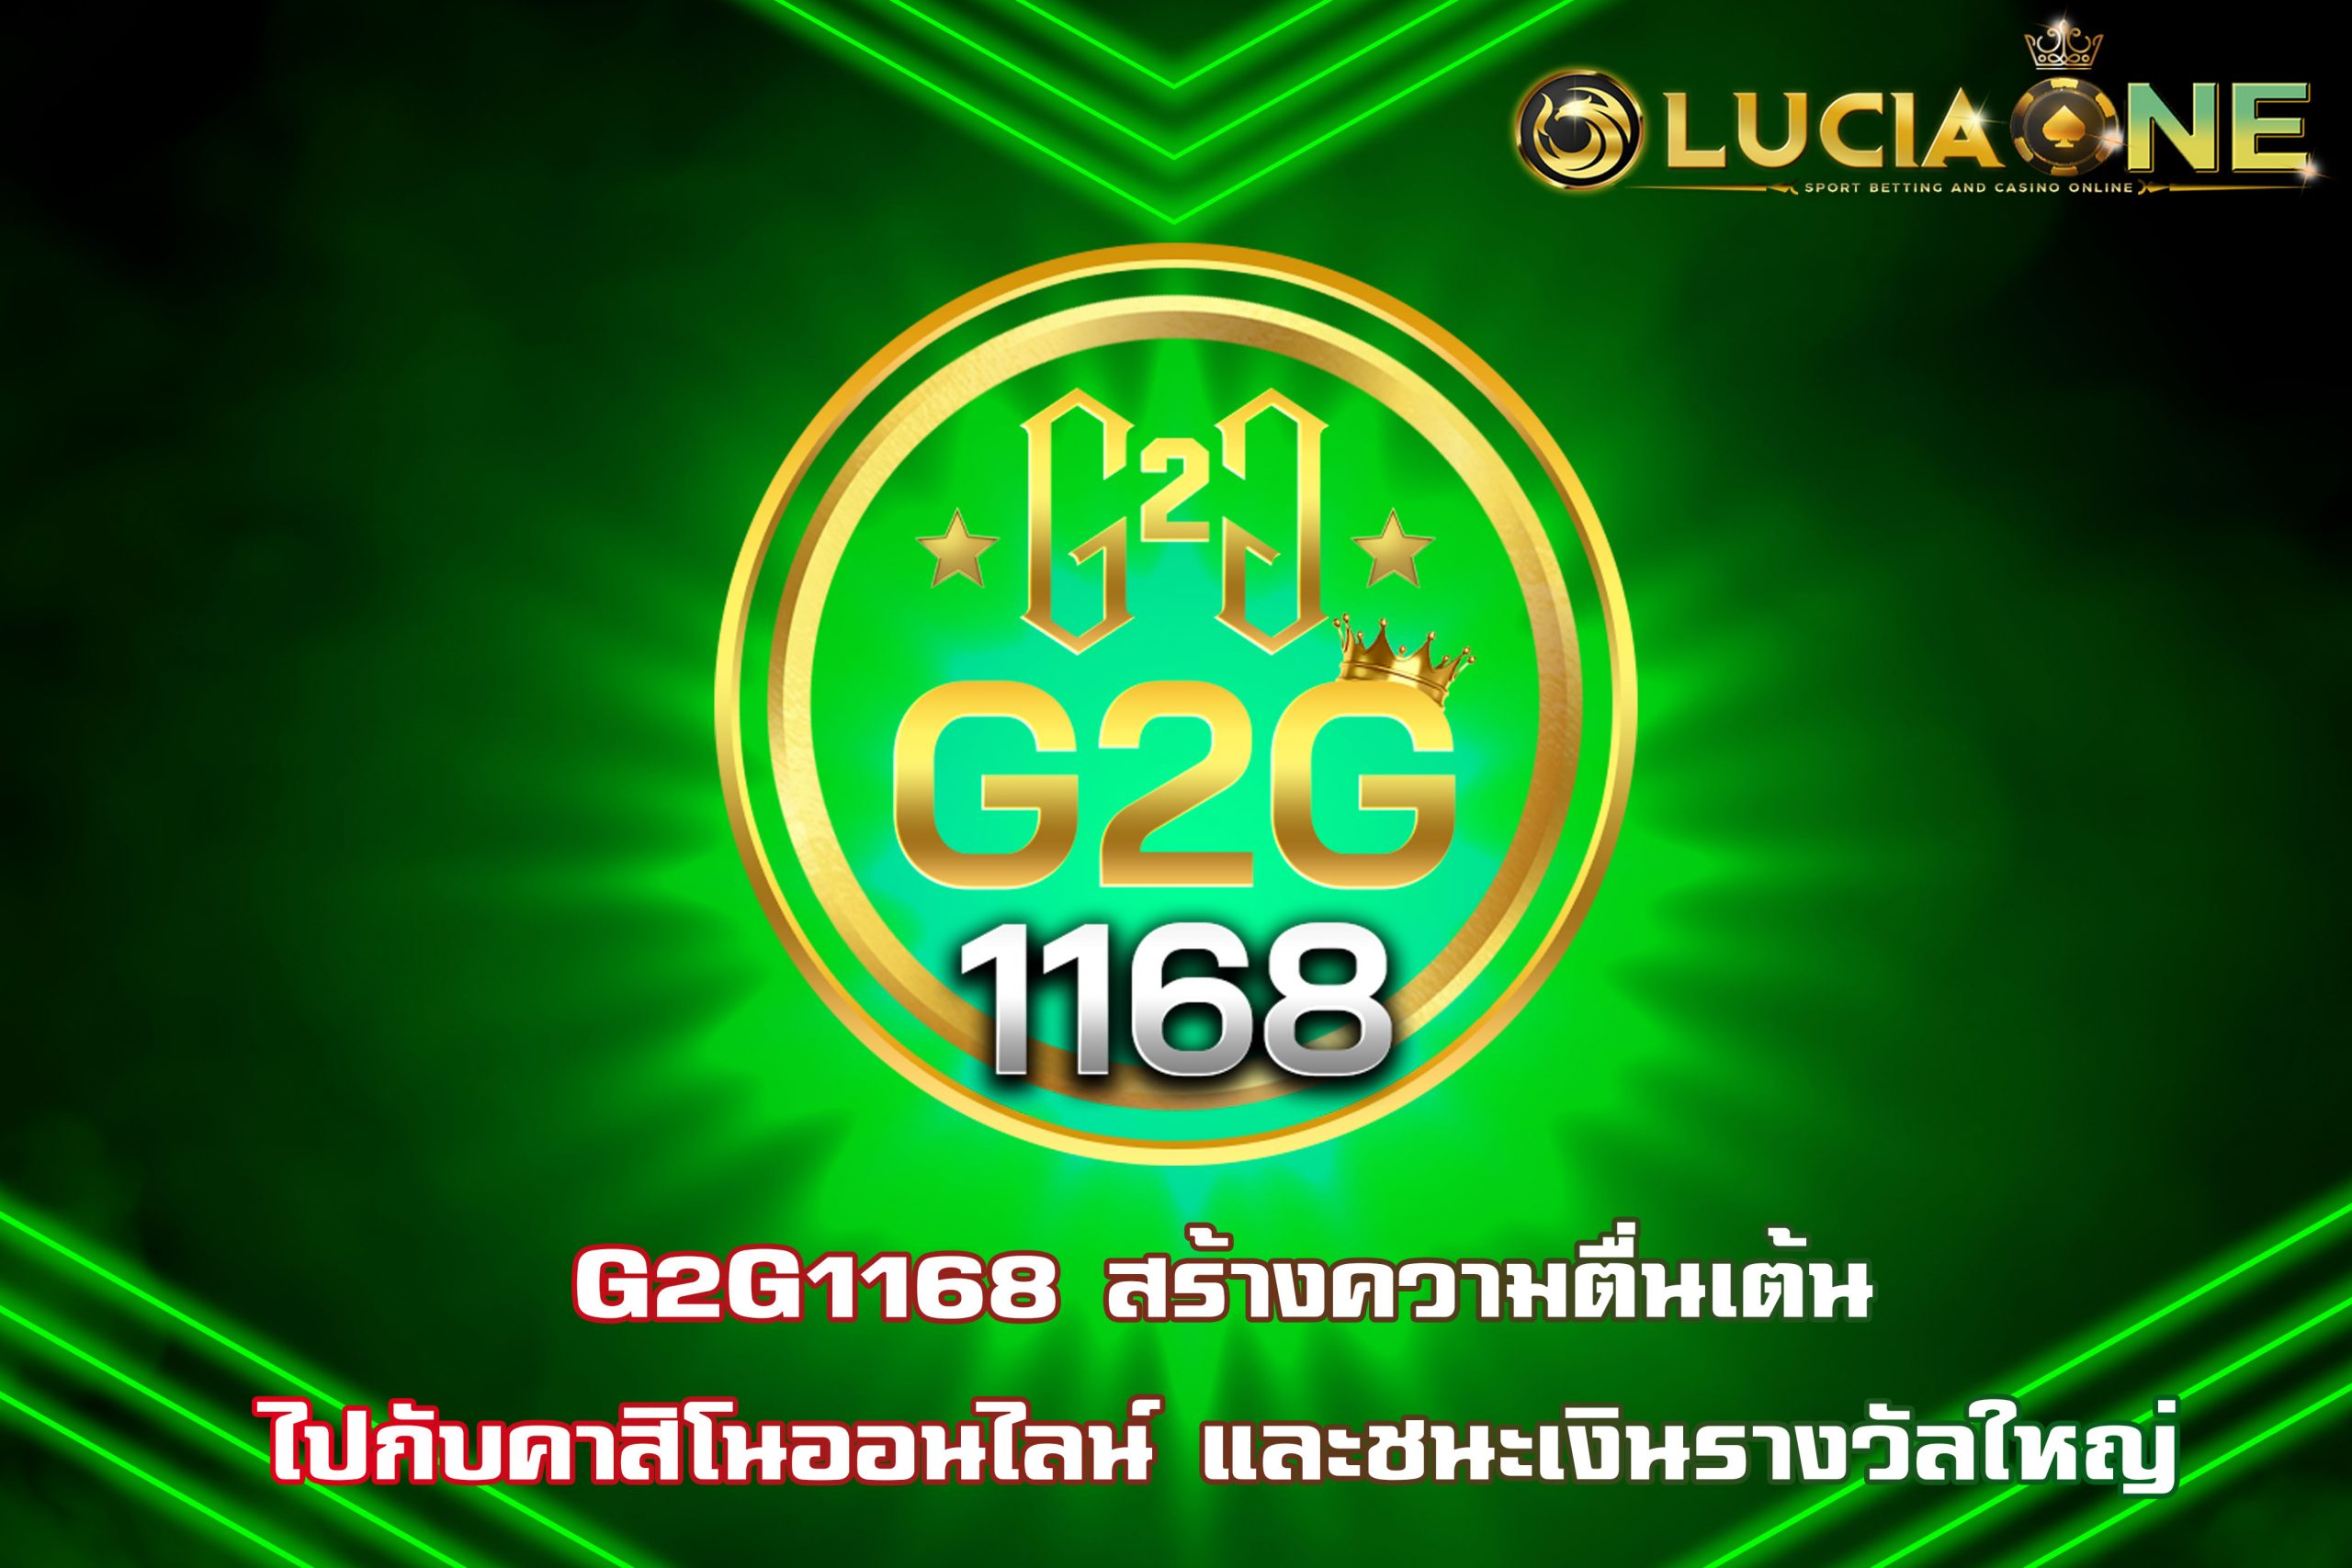 G2G1168 สร้างความตื่นเต้นไปกับคาสิโนออนไลน์ และชนะเงินรางวัลใหญ่